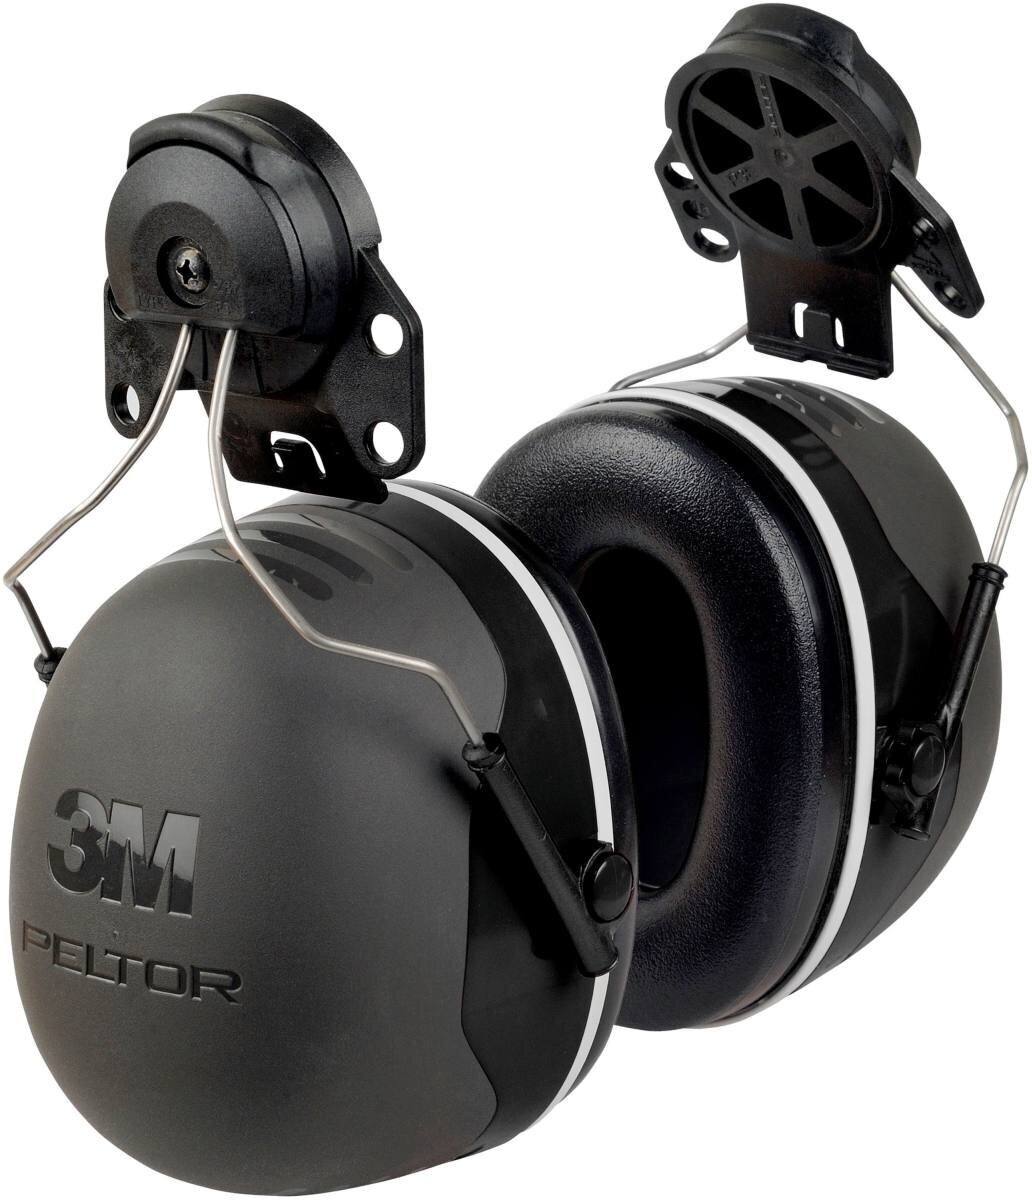 3M Peltor casque antibruit, X5P3E fixation sur casque, noir, SNR = 36 dB avec adaptateur de casque P3E (pour tous les casques 3M, sauf G2000)